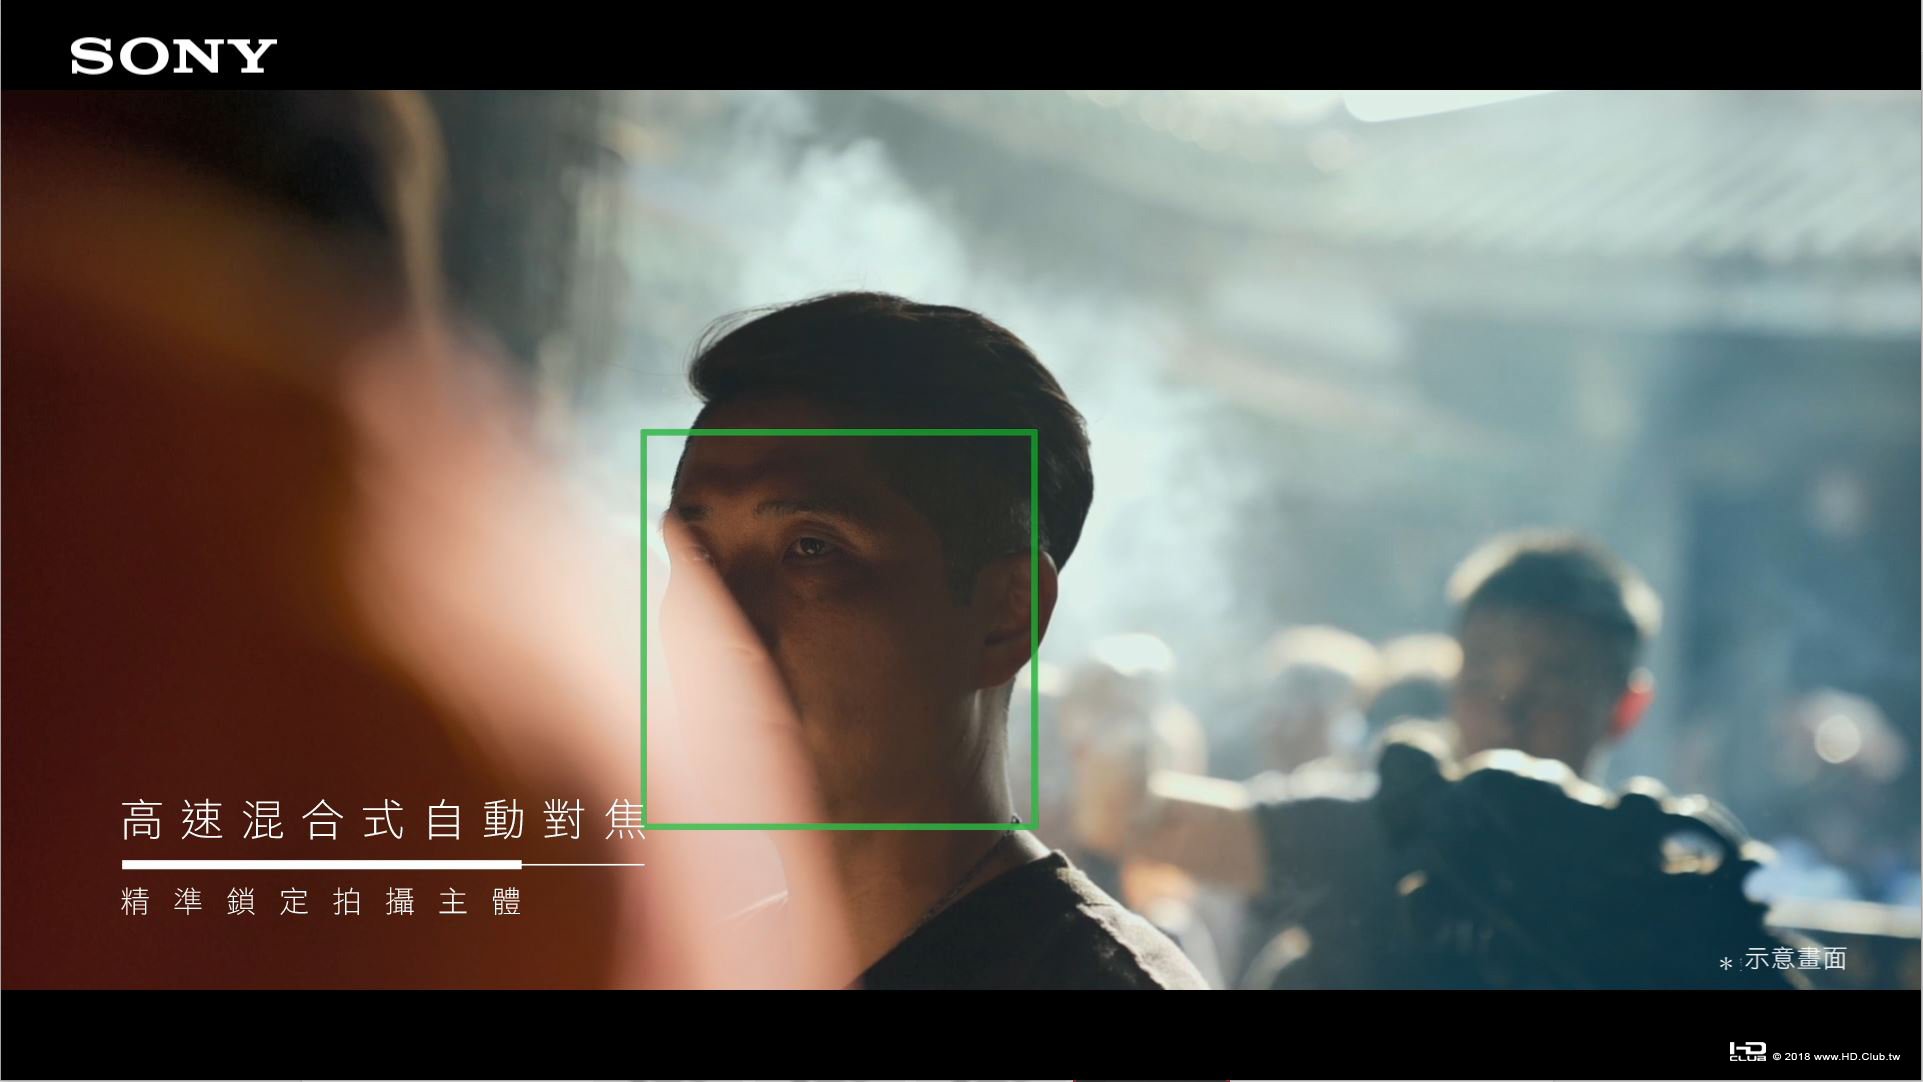 圖5) (正確檔案) Sony  α7 III的高速混合自動對焦系統在拍攝影片時能提供可靠的對焦.jpg